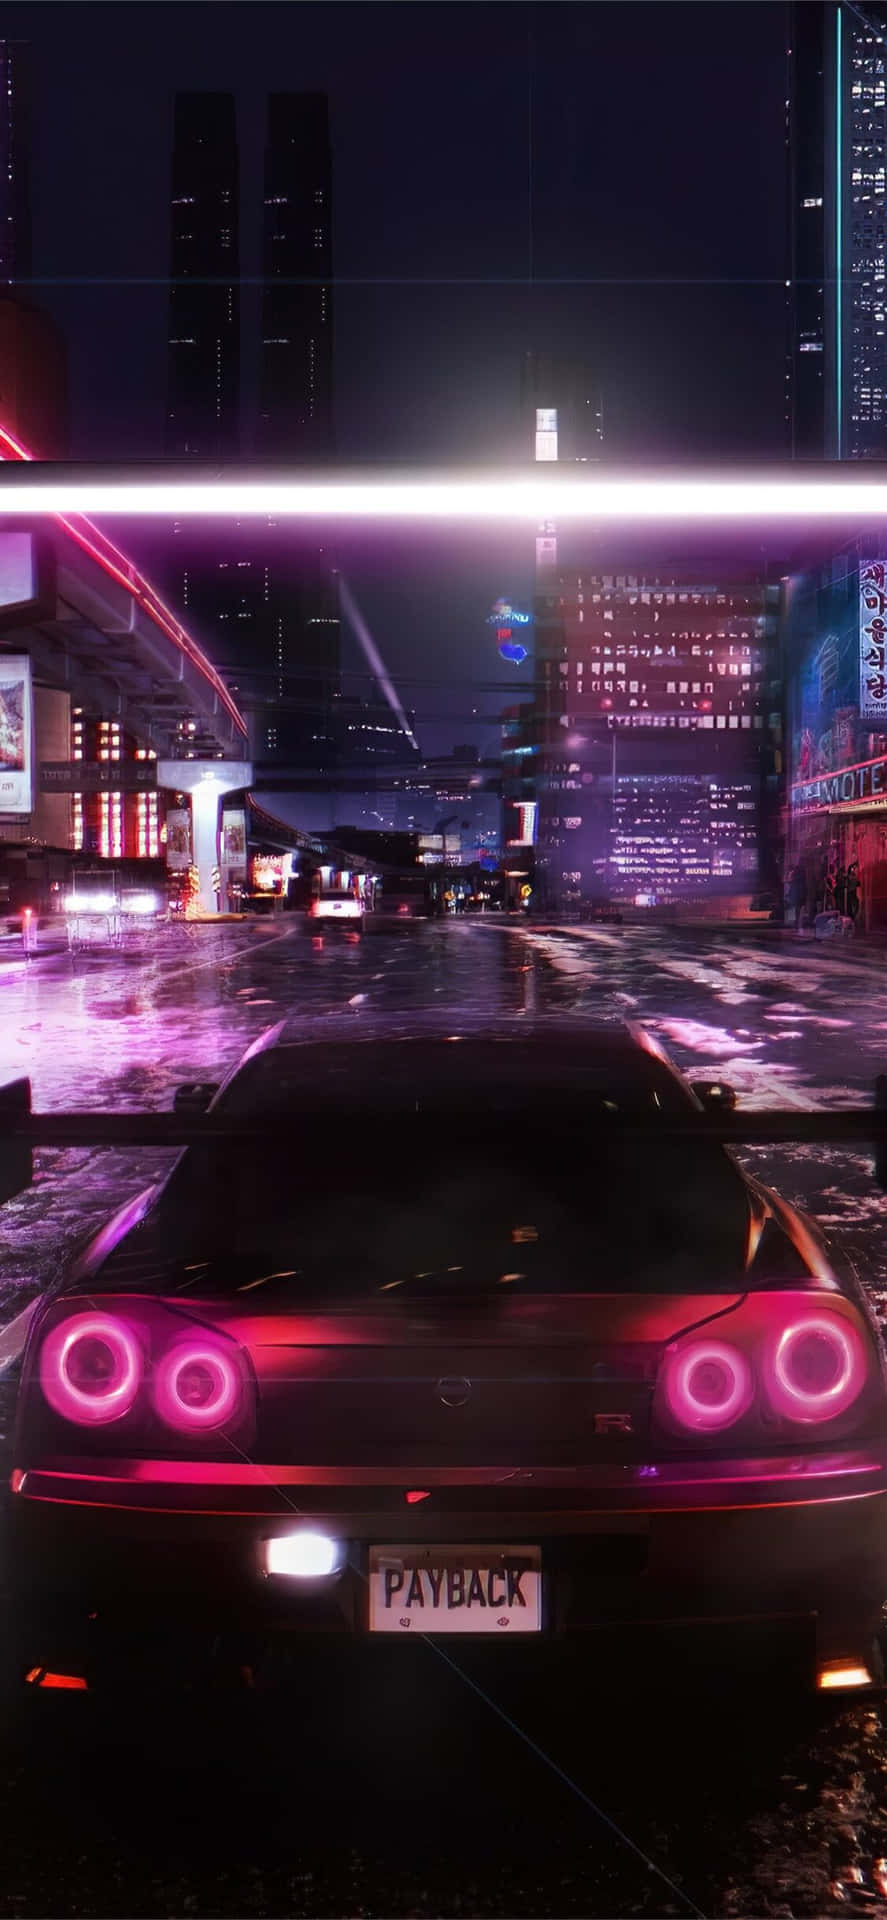 Iphonexs Bakgrundsbild För Need For Speed Payback Med Lila Belysning Och Nissan Skyline.